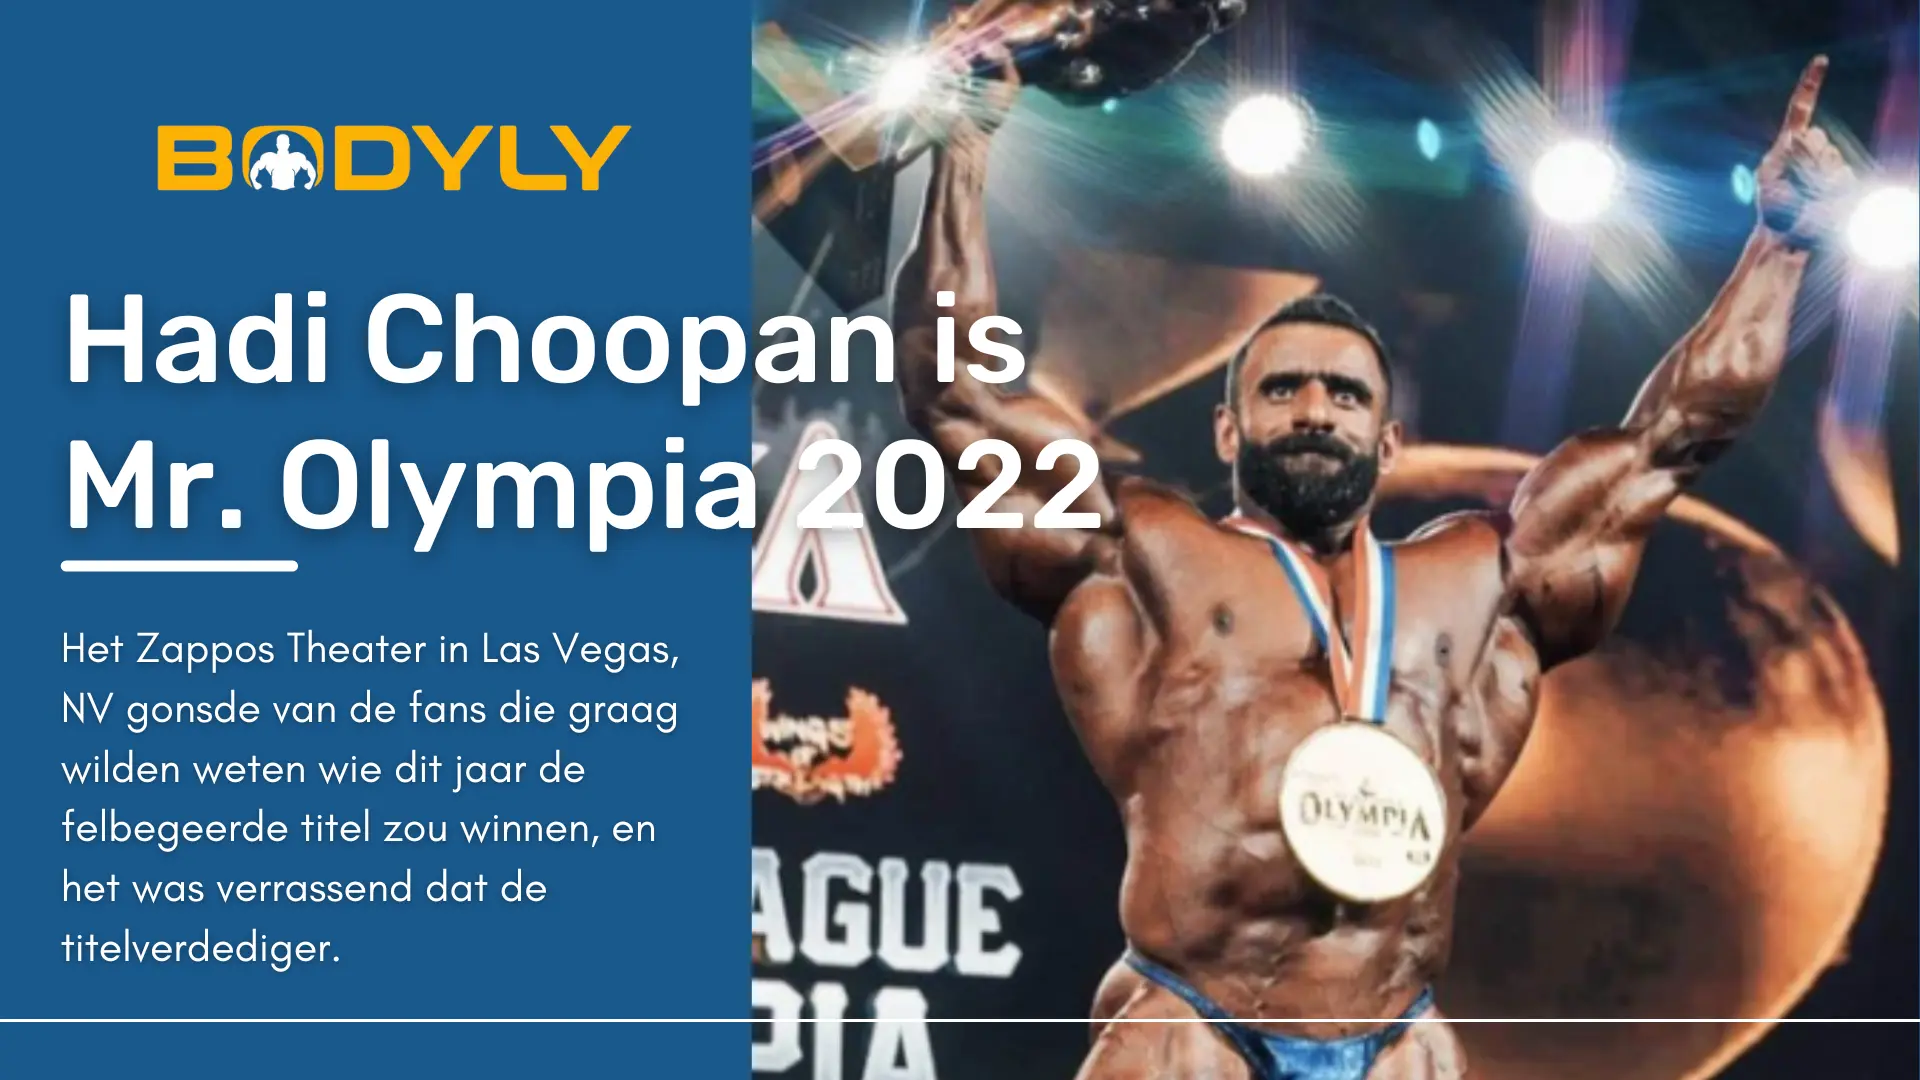 Hadi Choopan is de nieuwe Mr. Olympia 2022